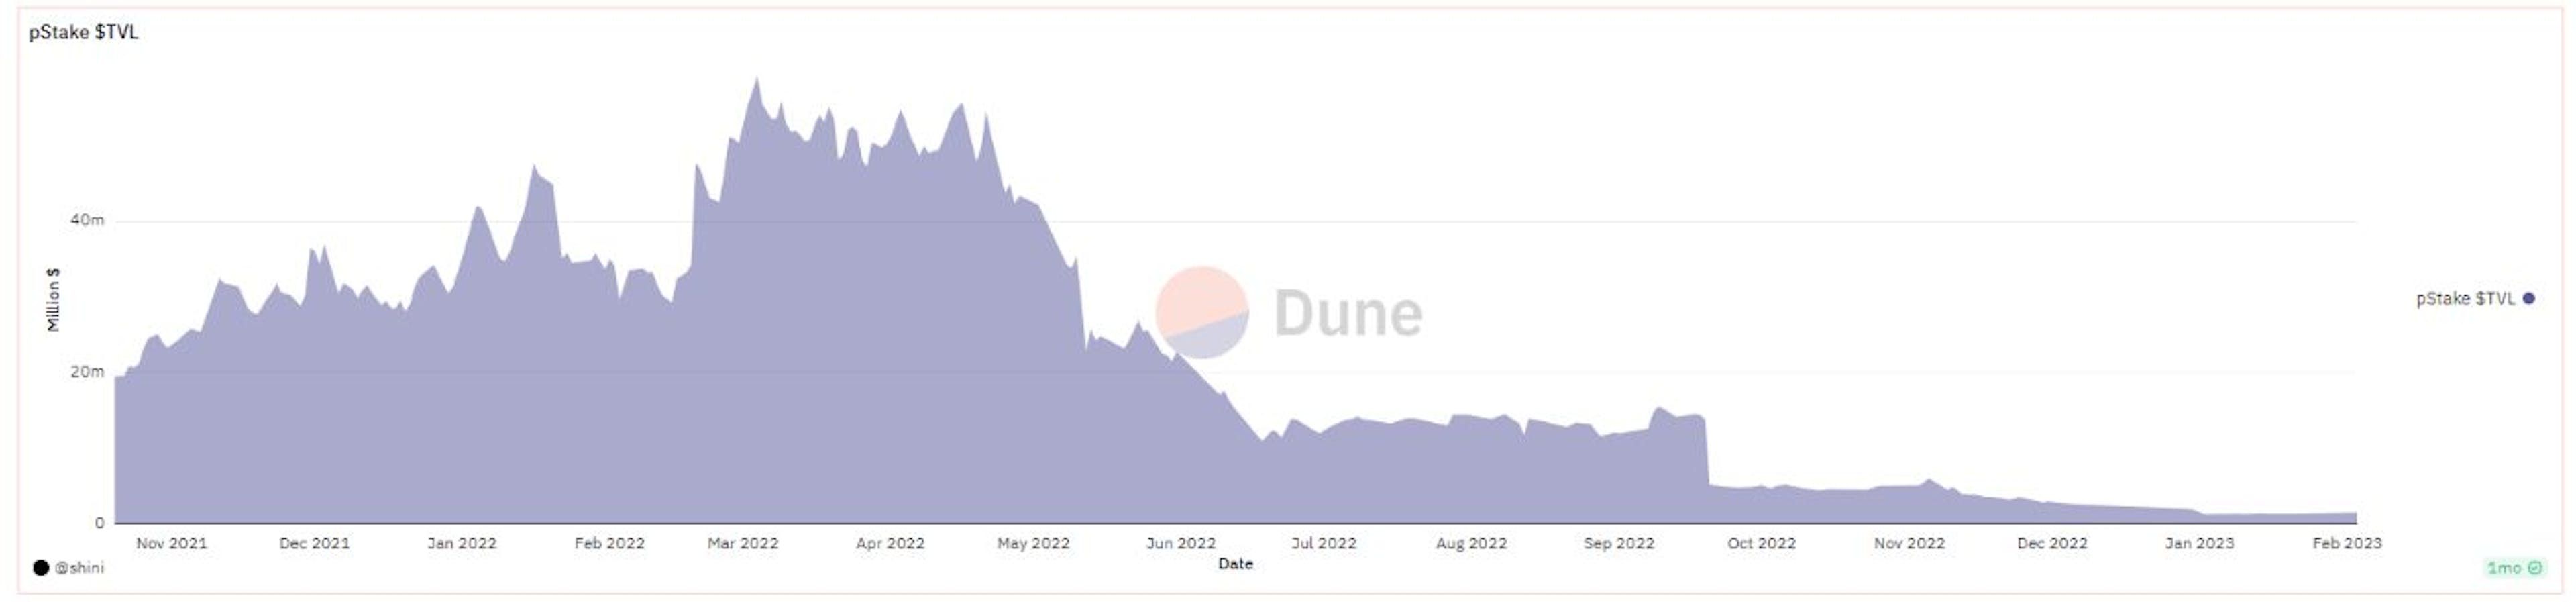 出典: Dune Analytics @Shini